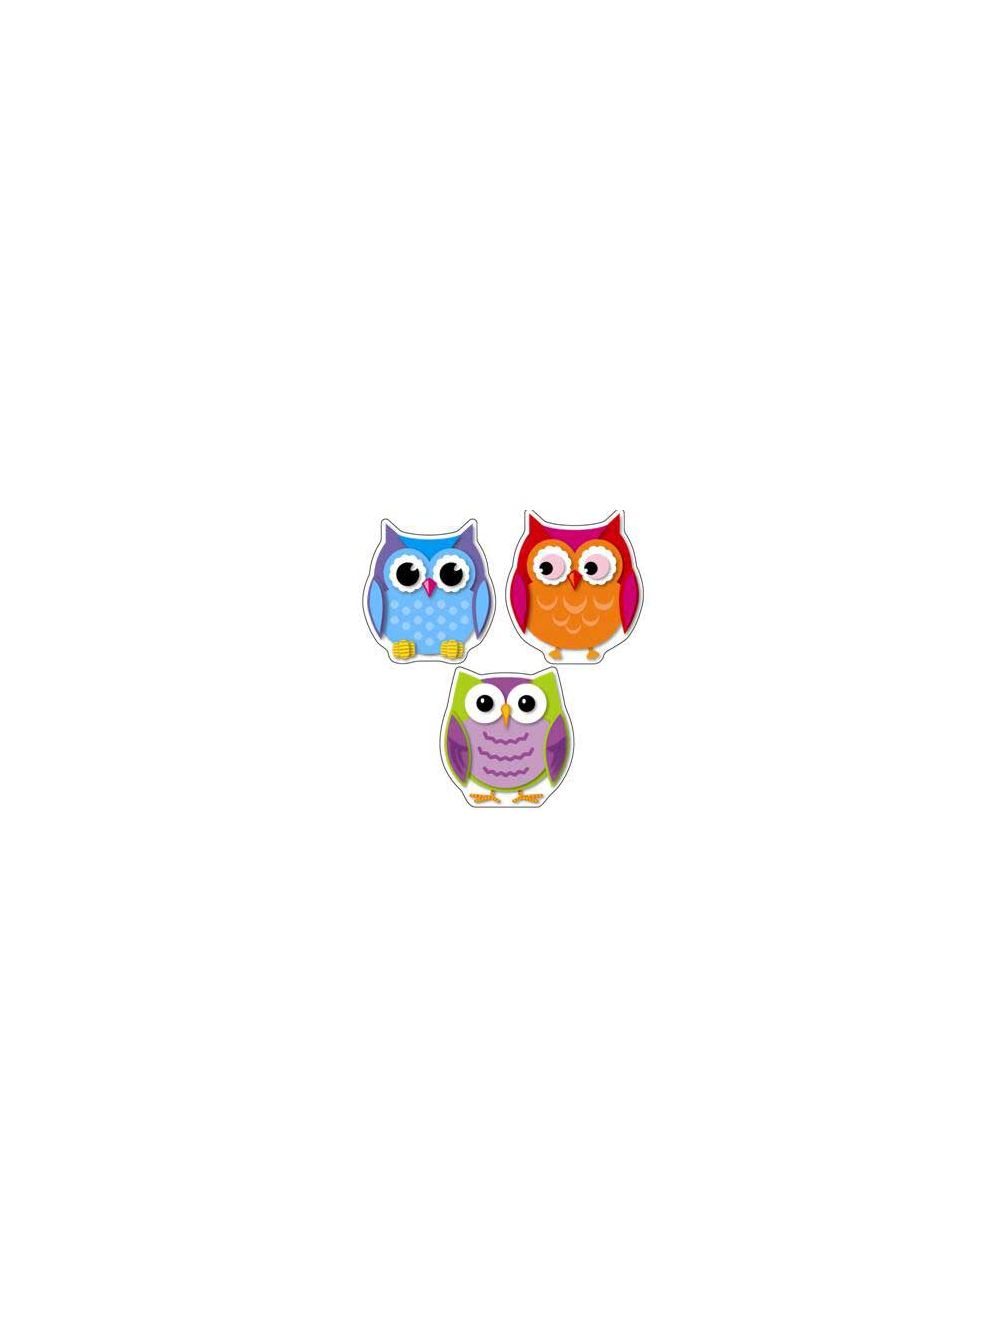 36 Owl Sturdy Carson-dellosa Colorful Owls Cut-outs Multicolor cdp120107